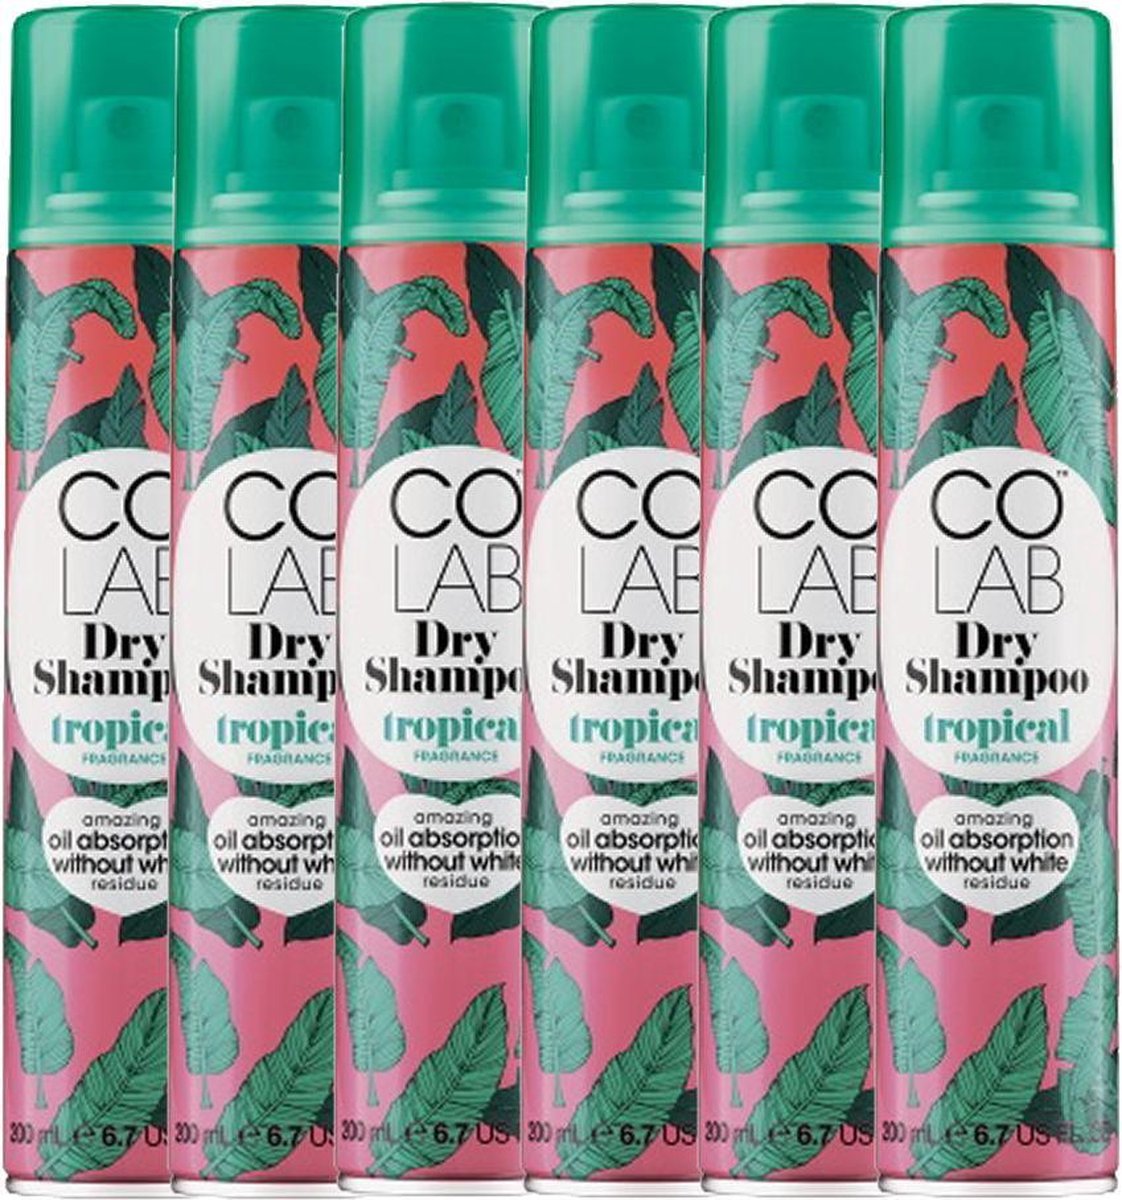 Colab - Droogshampoo Tropical, 200 ml - 6 pak